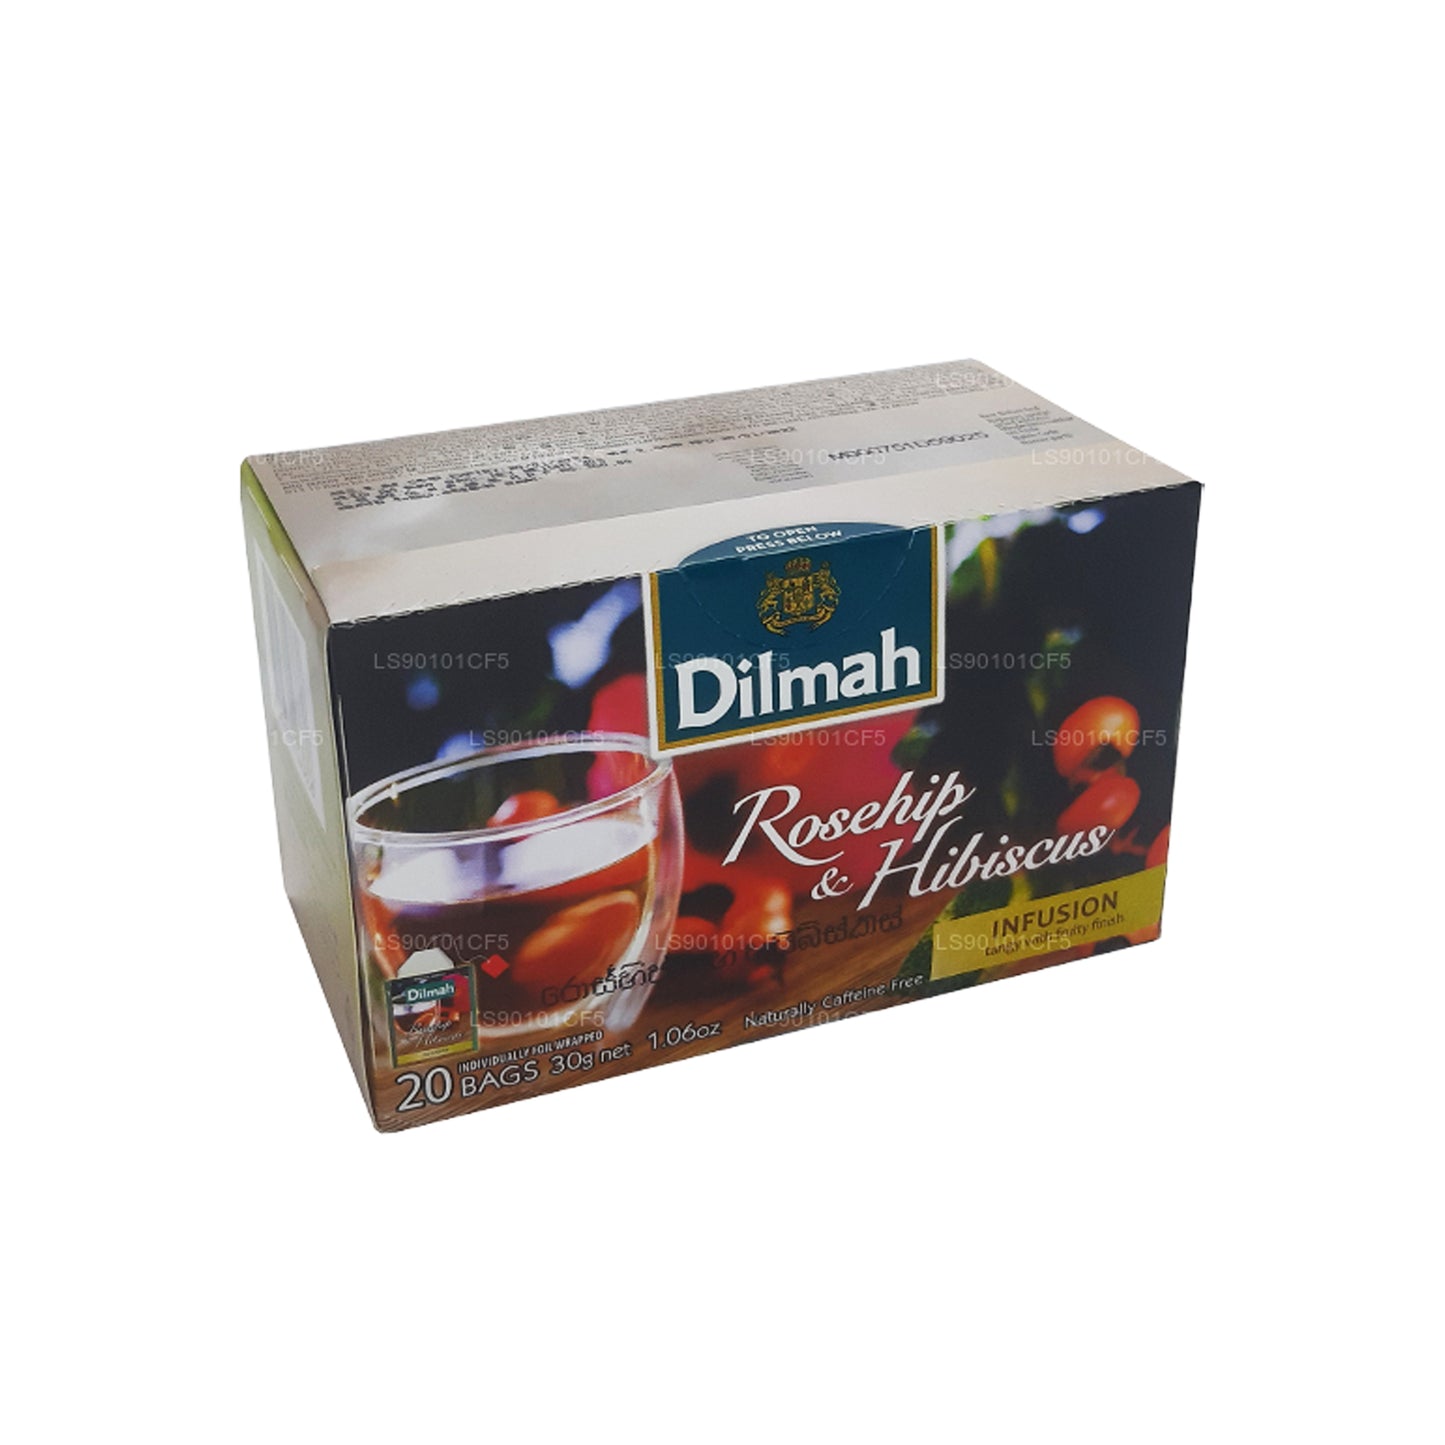 Dilmah Herbata czarna o smaku dzikiej róży i hibiskusa (30g)